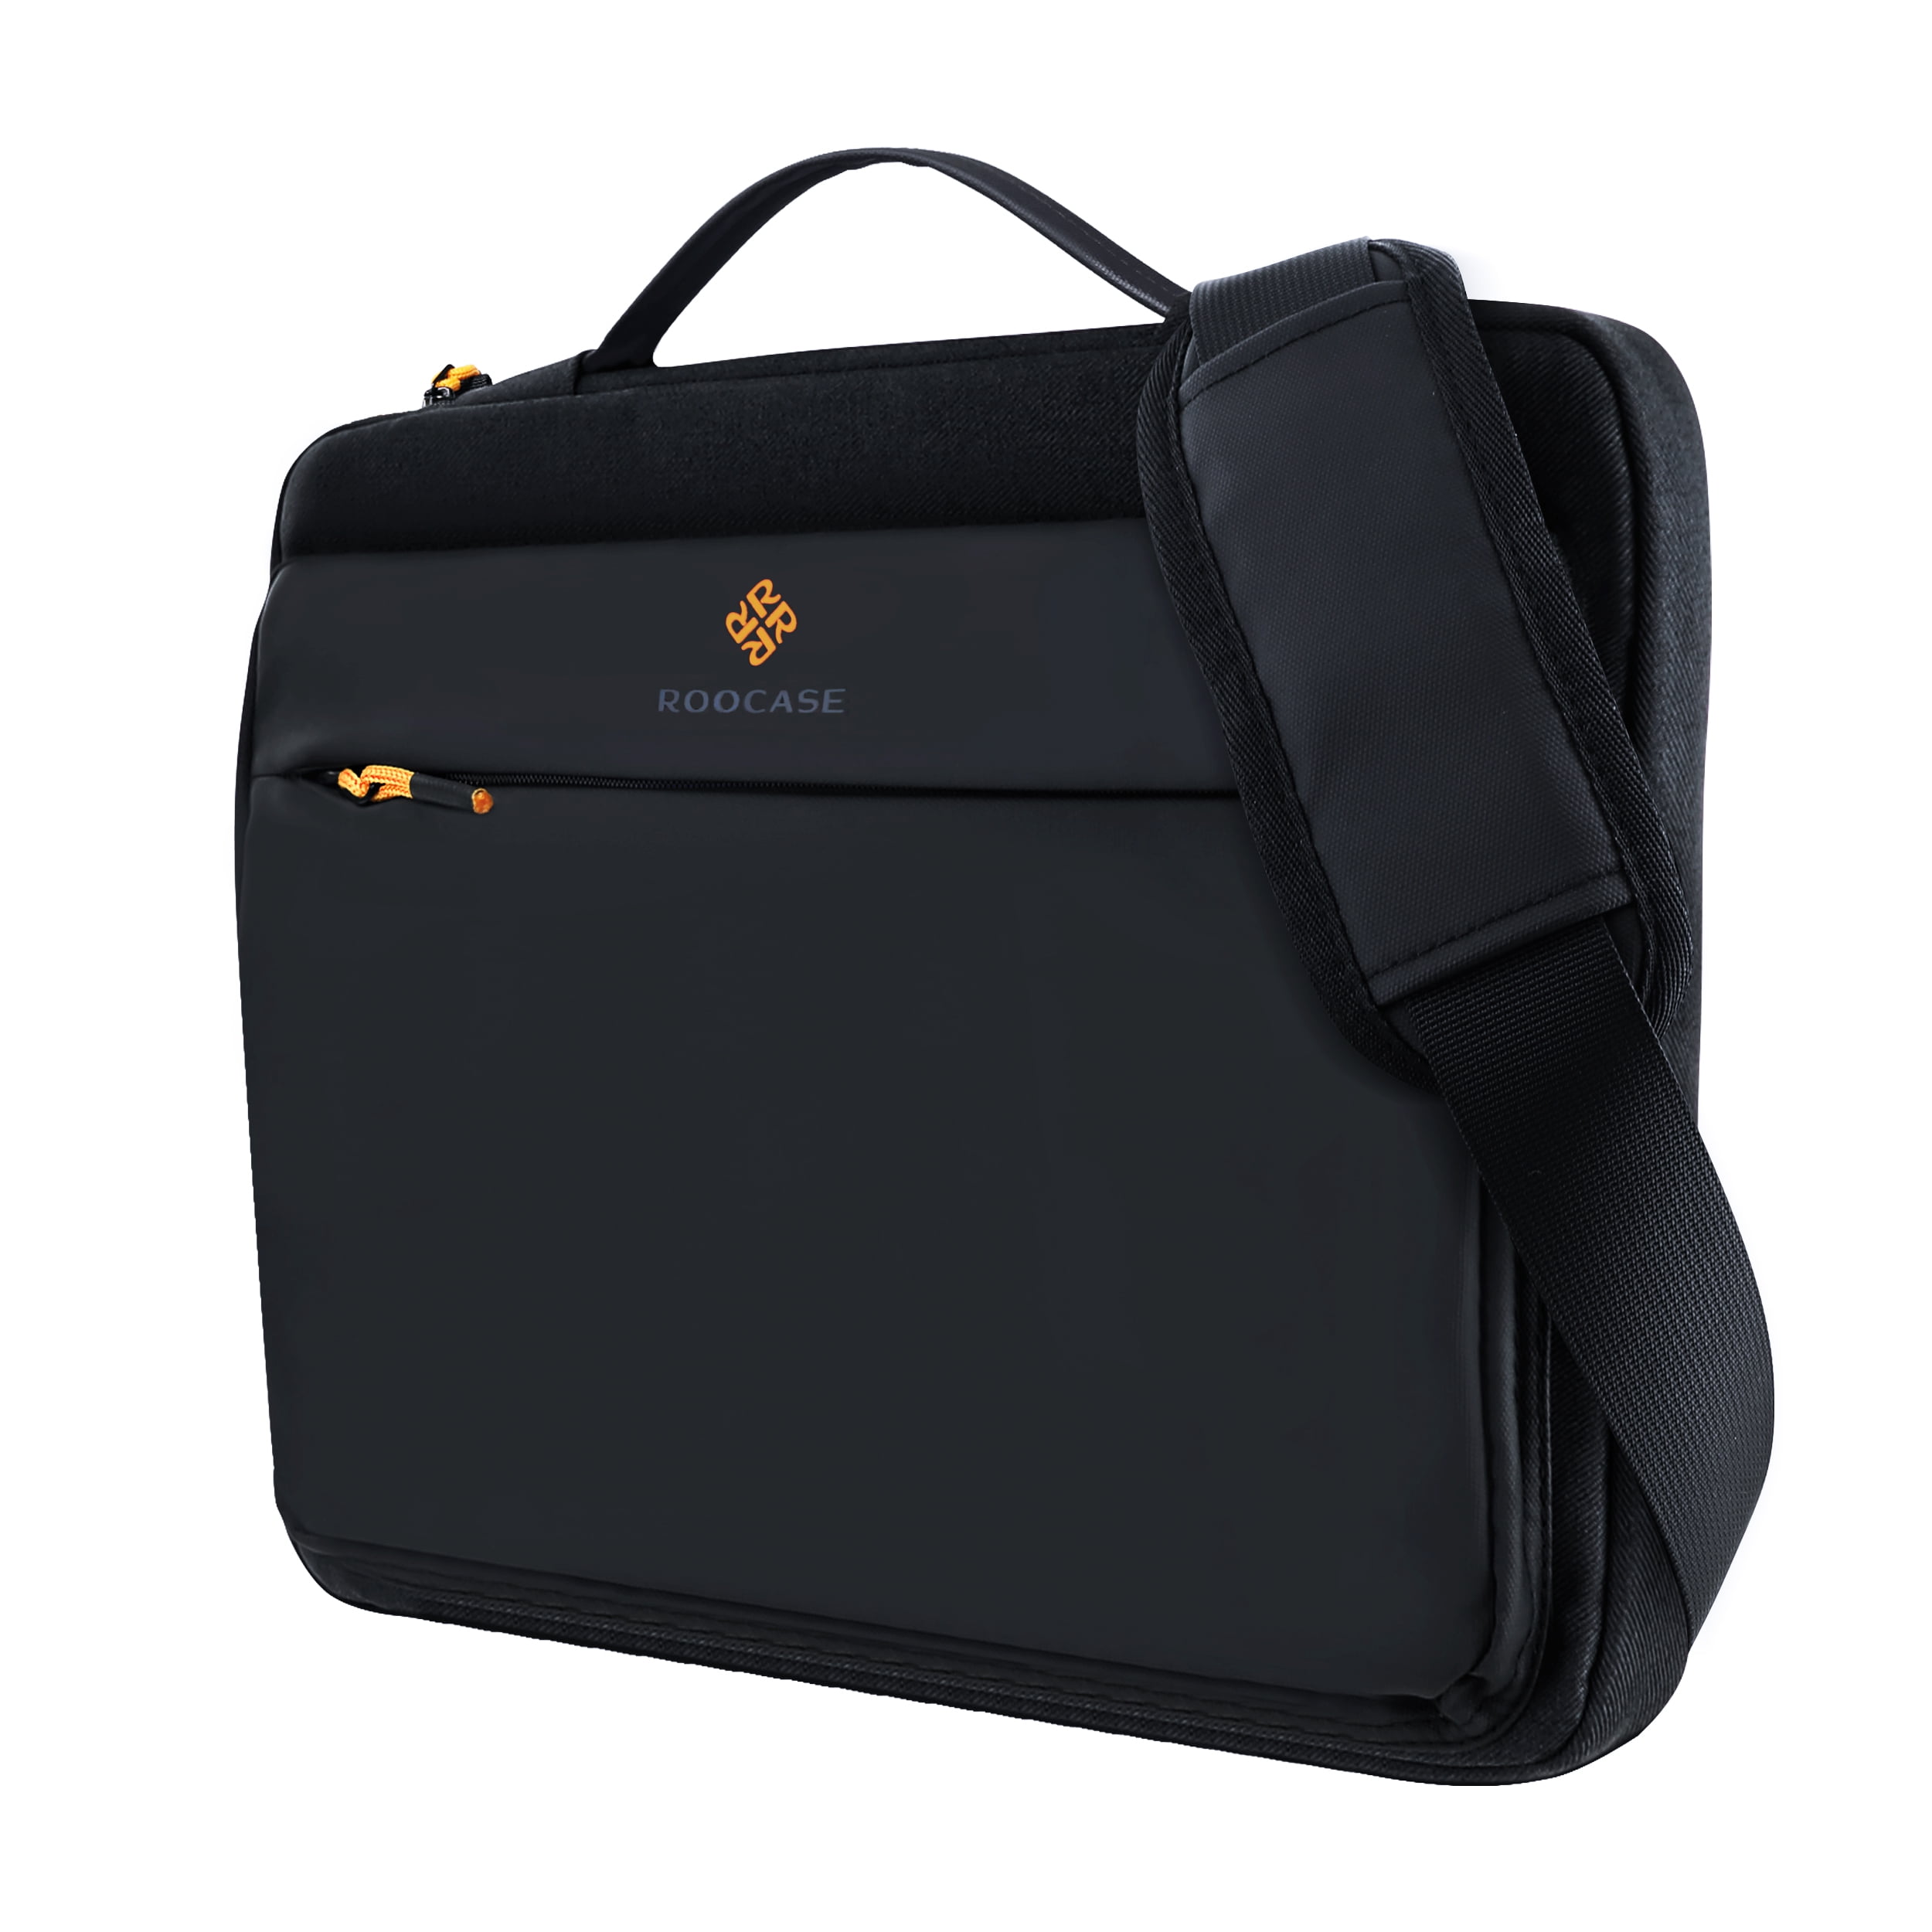 Messenger Bag with shoulder strap - fabric satchel for Tablet, Camera ...